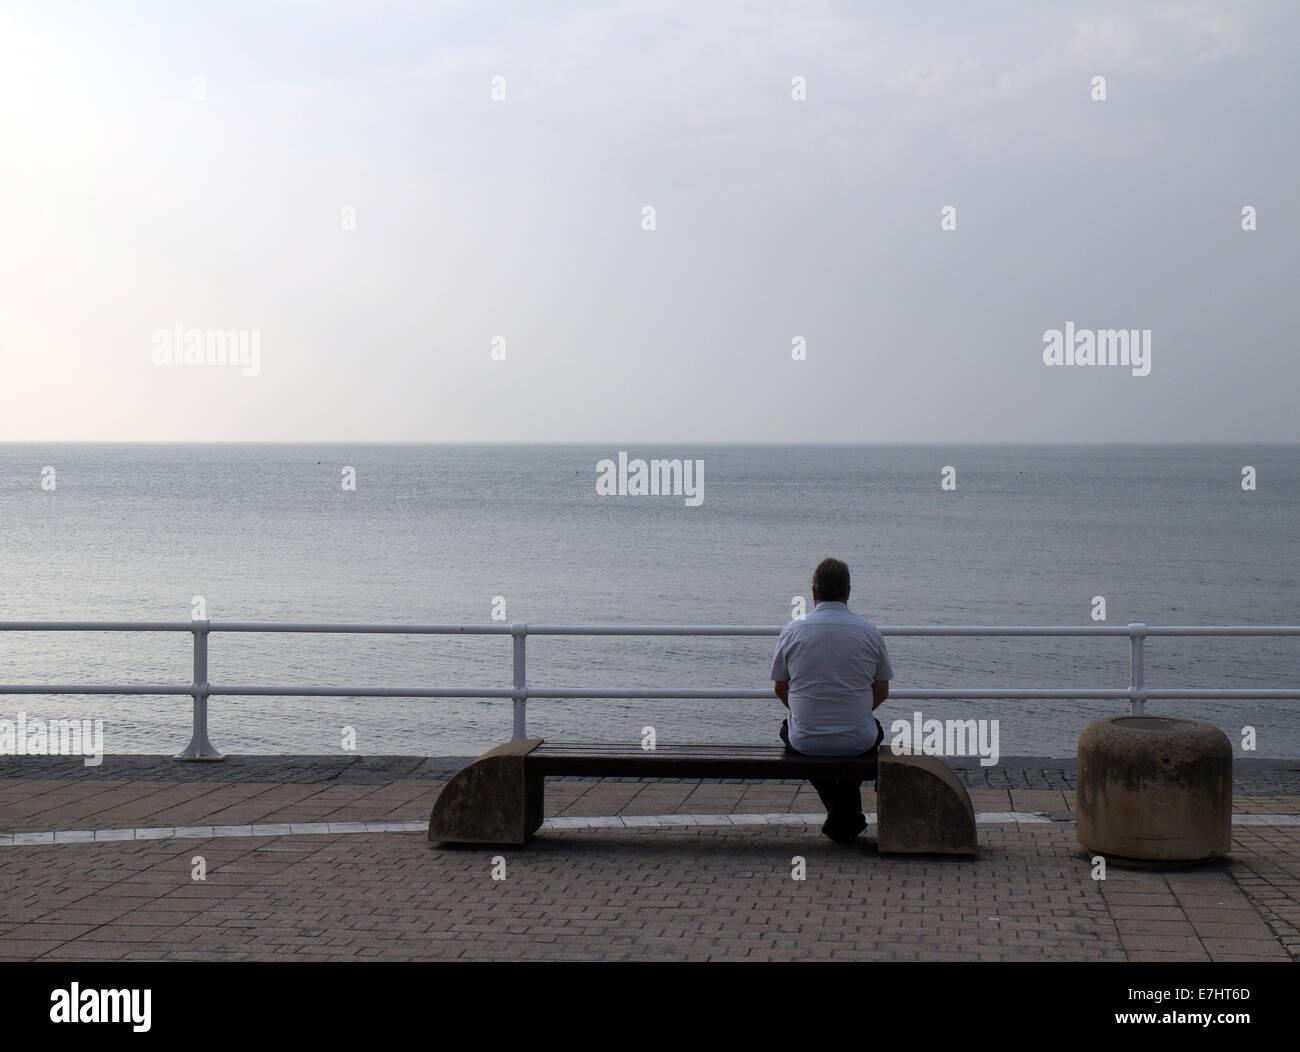 Aberystwyth, Pays de Galles, Royaume-Uni. 18 Septembre, 2014. Un homme est assis seul sur la Promenade à Aberystwyth donnant sur un paysage marin, gris avec pluie prévue pour la région au cours des prochains jours. Crédit : John Gilbey/Alamy Live News Banque D'Images